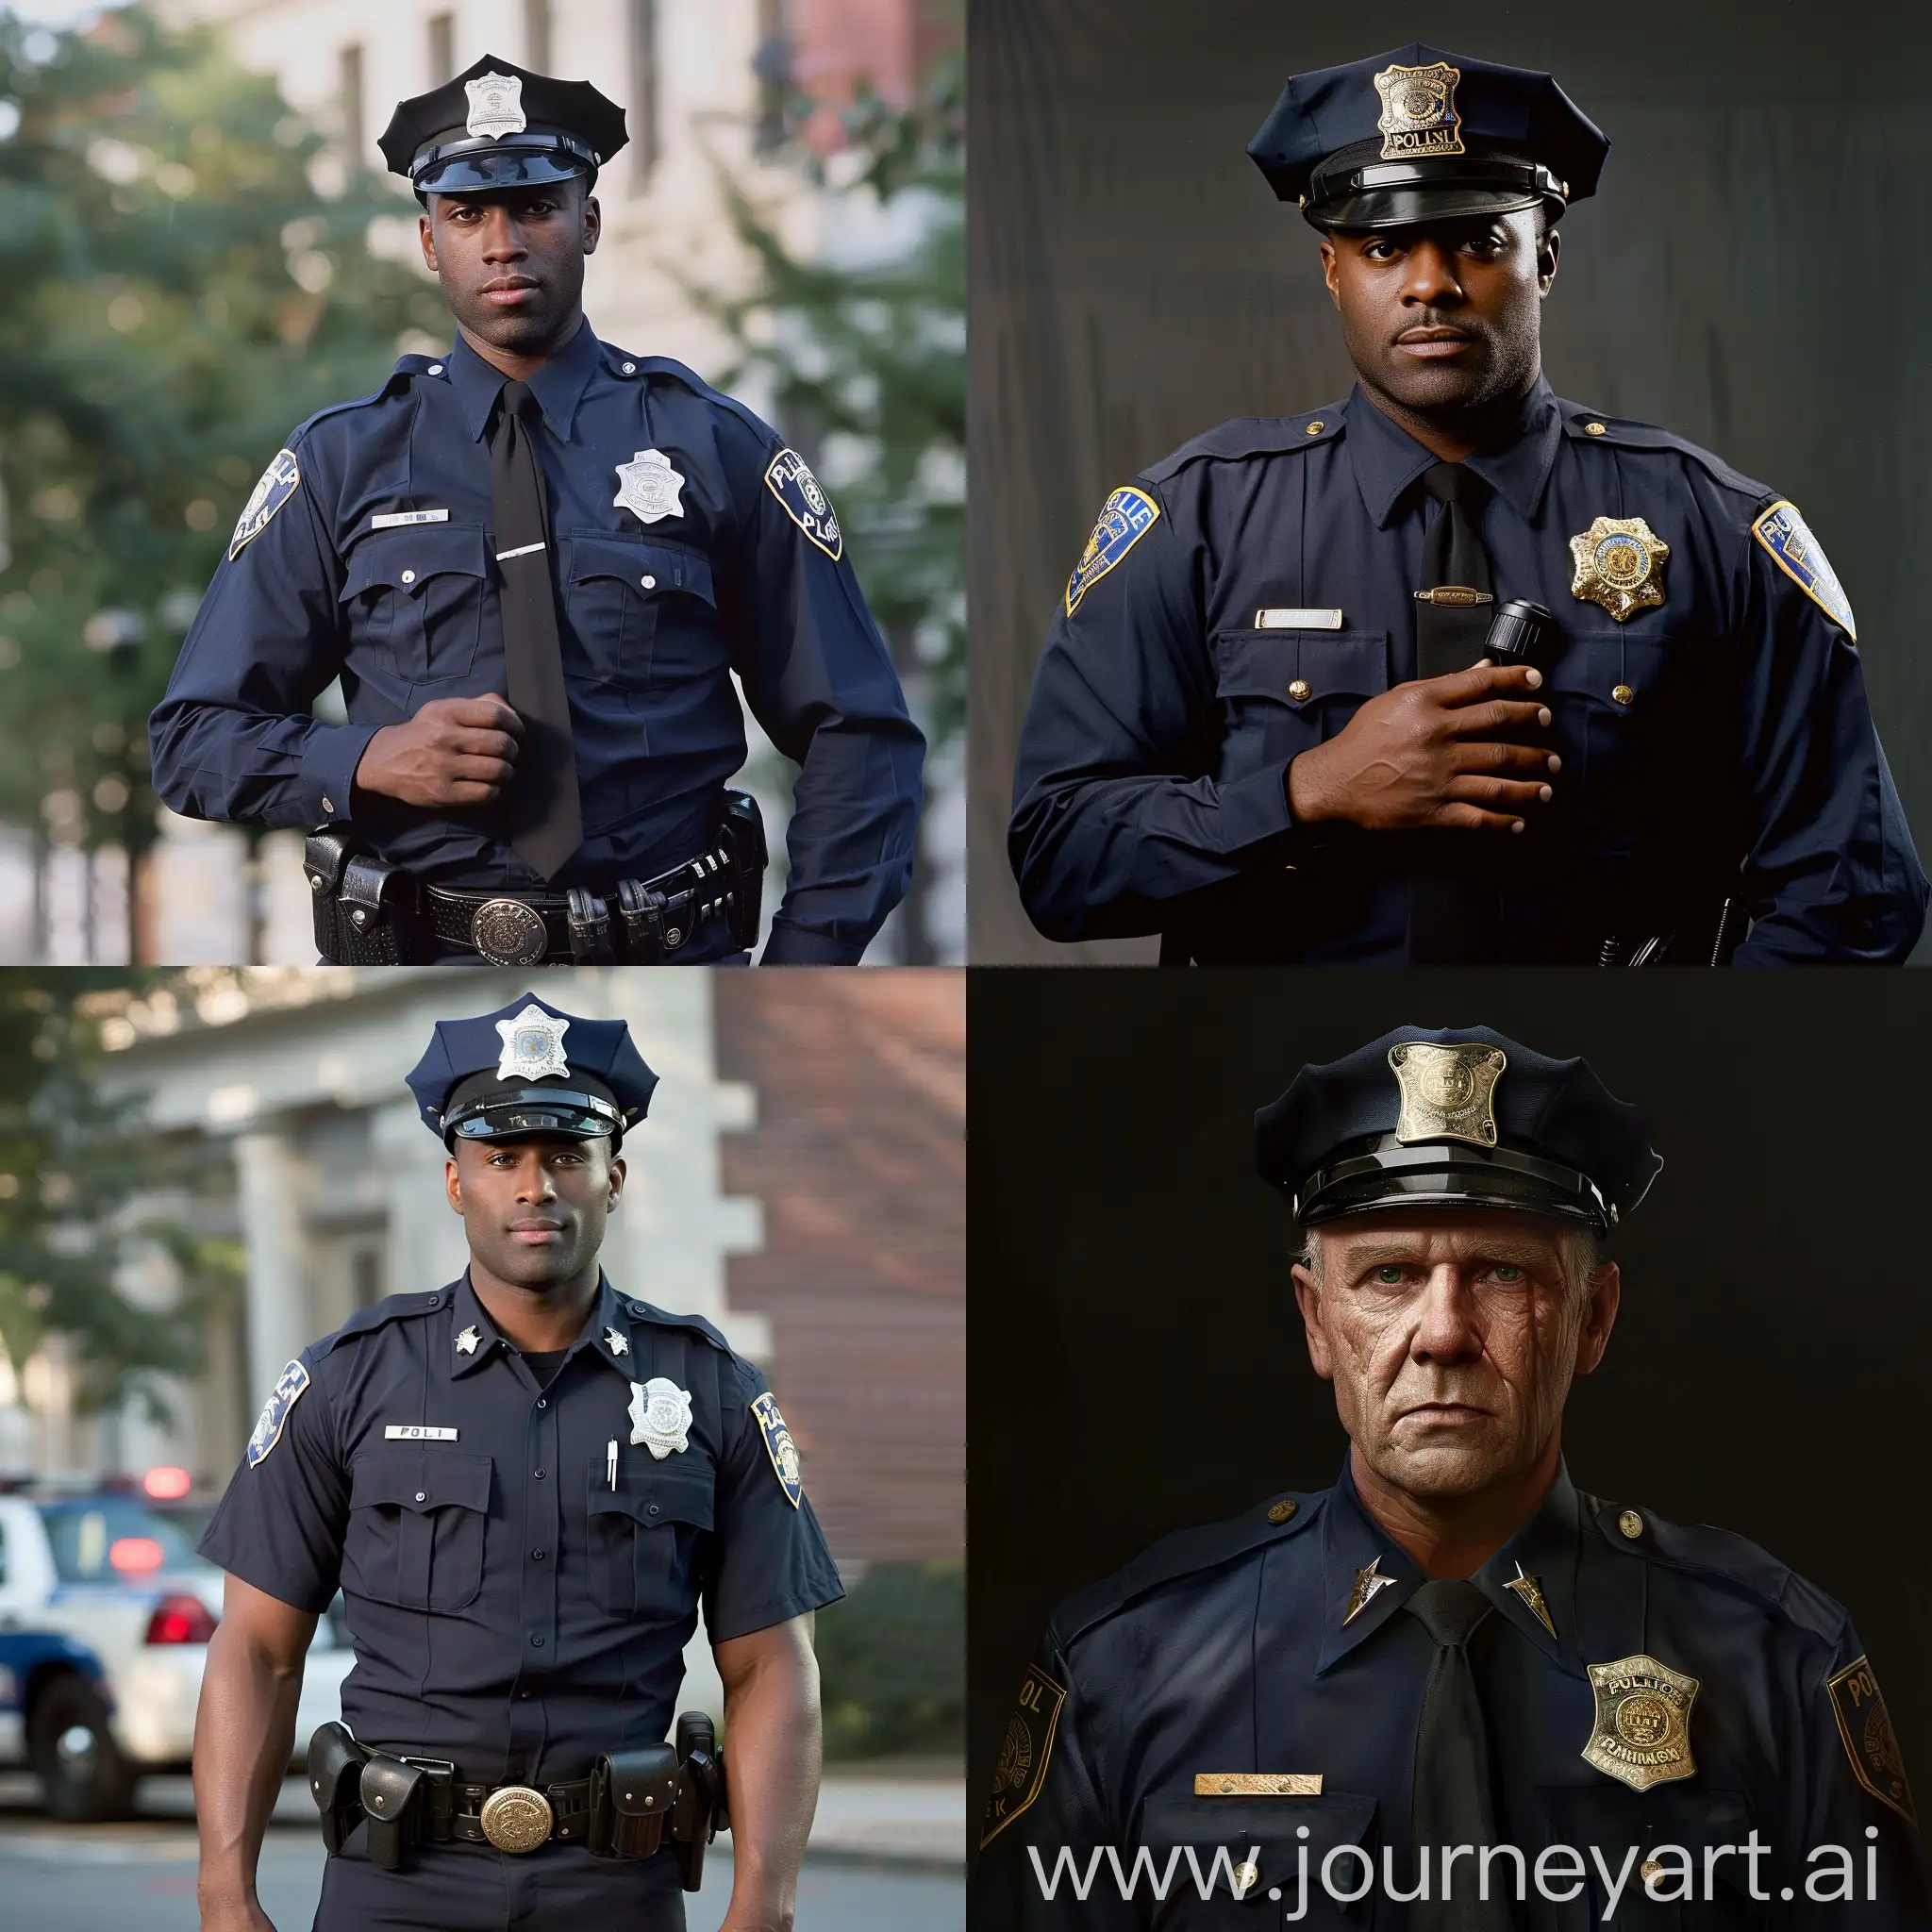 Dedicated-Policeman-in-Urban-Vigilance